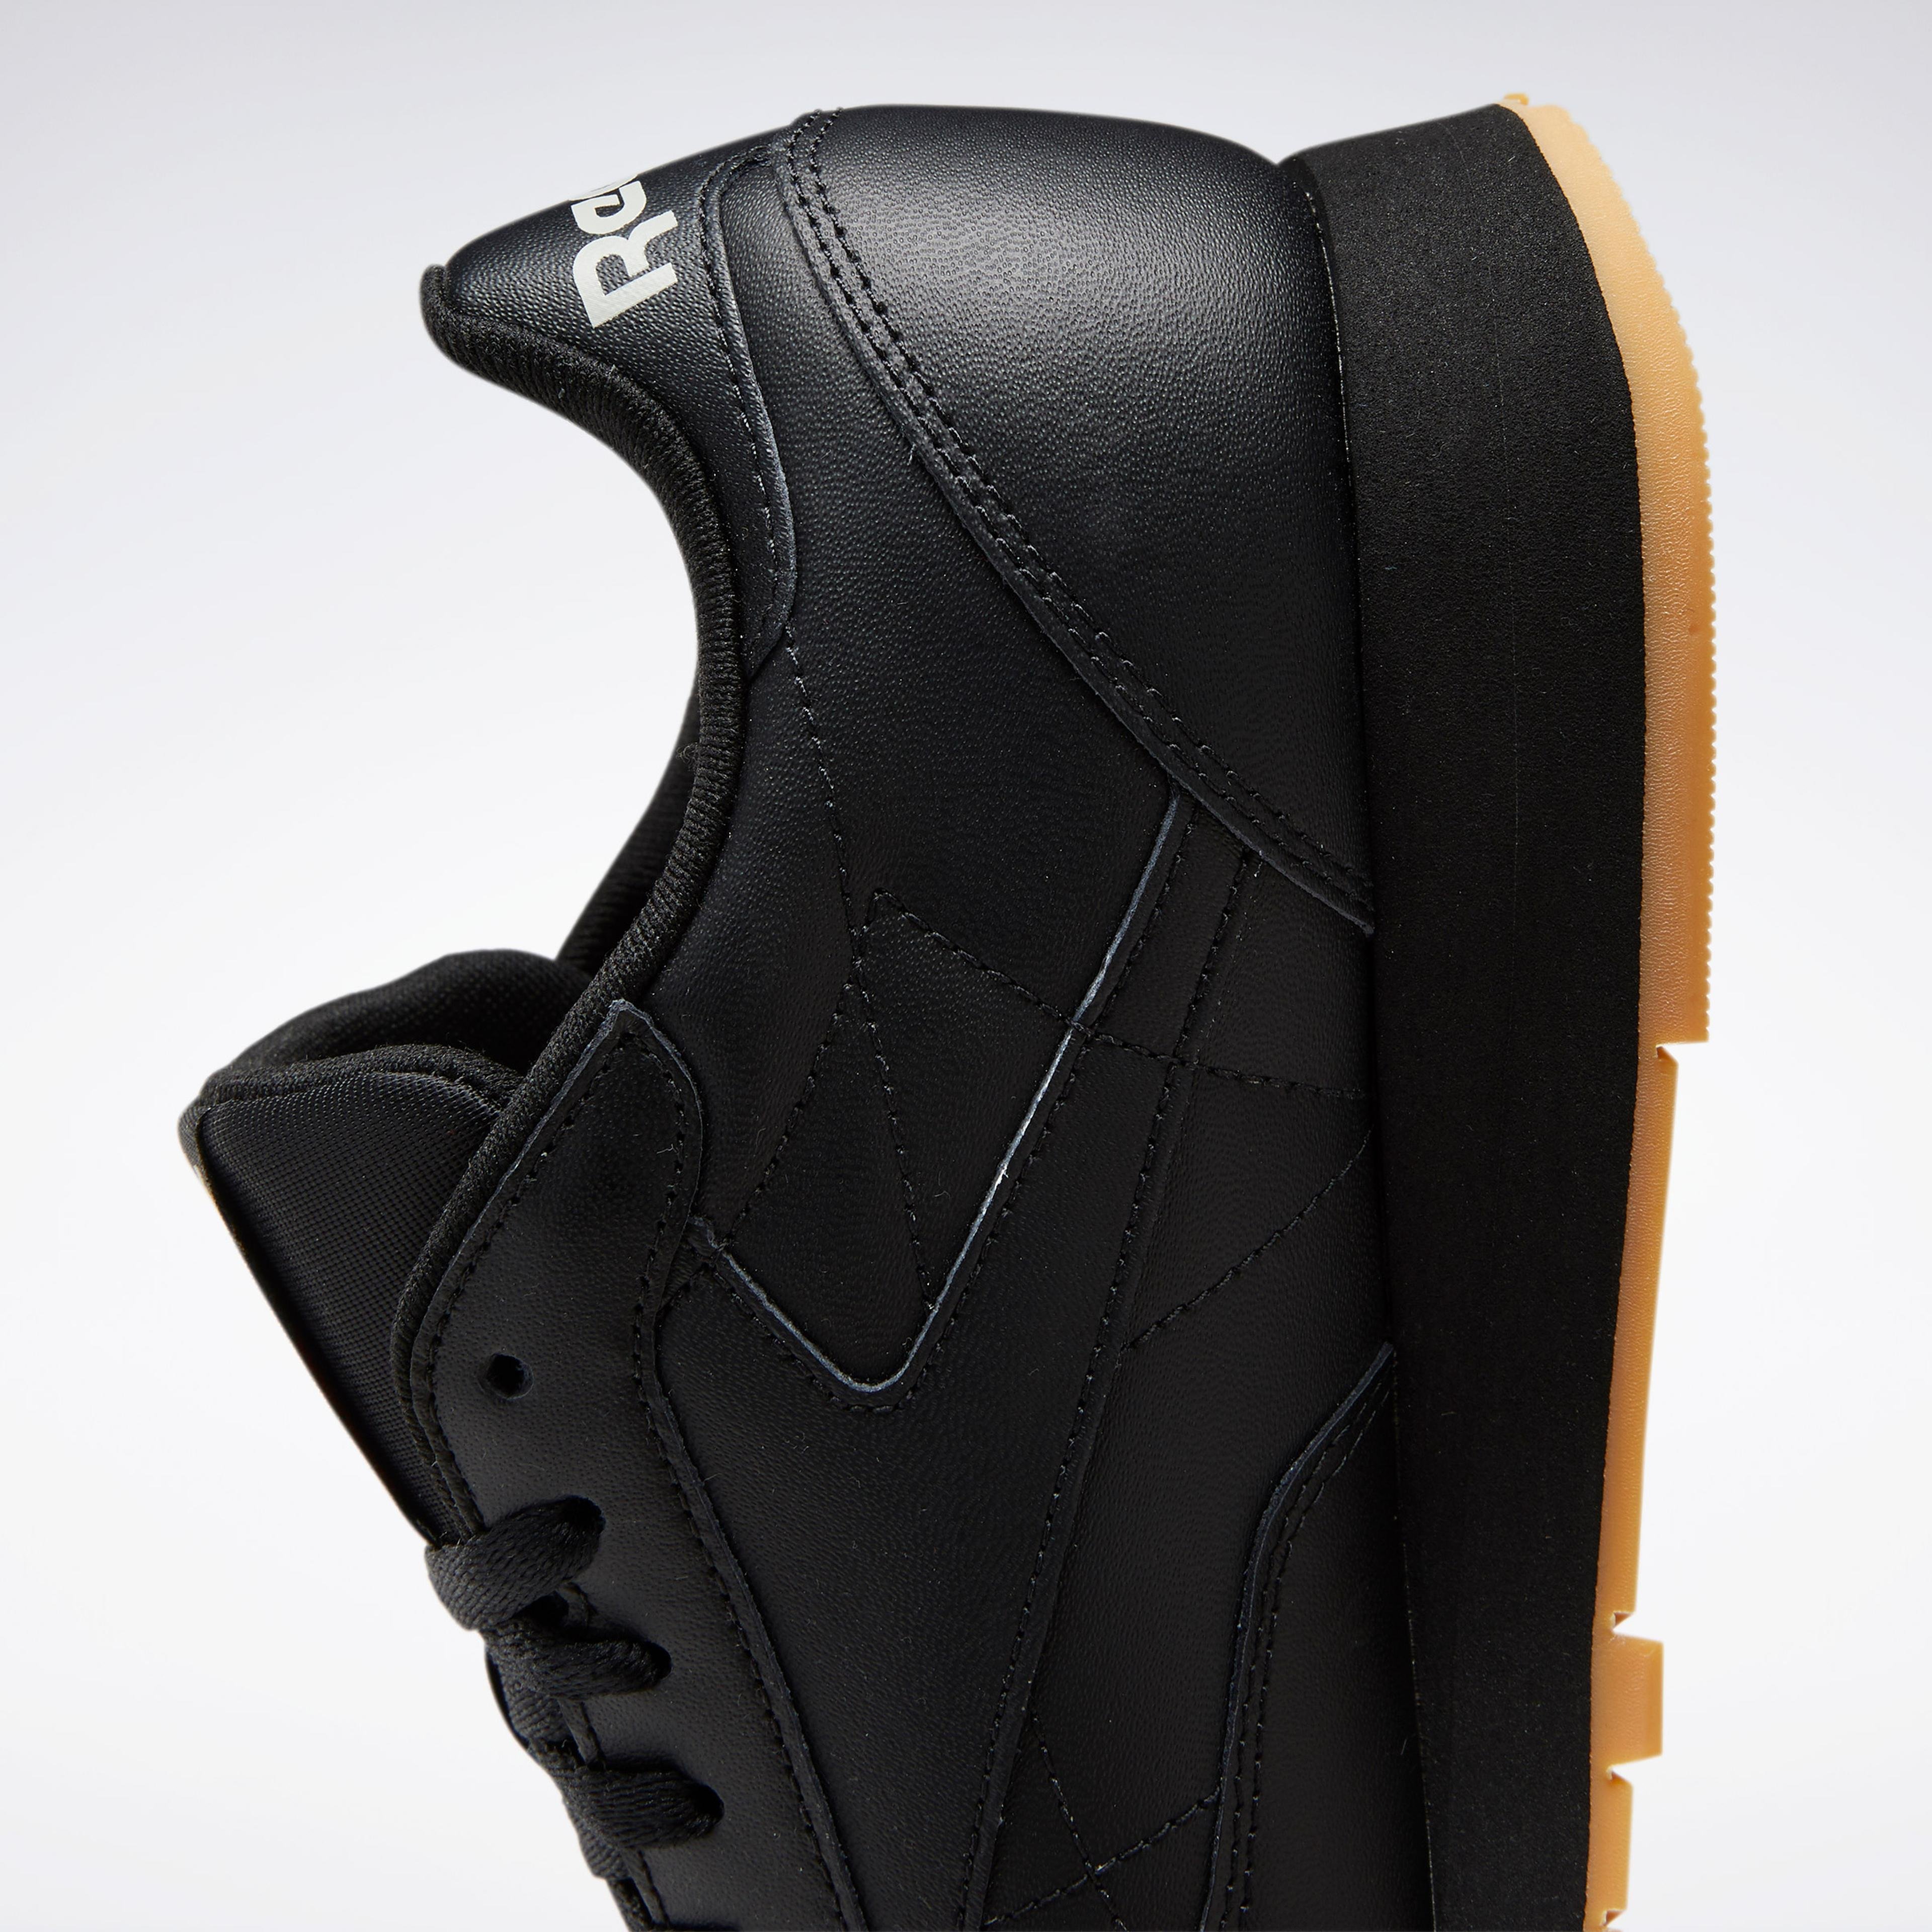 Reebok Classic Leather Unisex Siyah Spor Ayakkabı